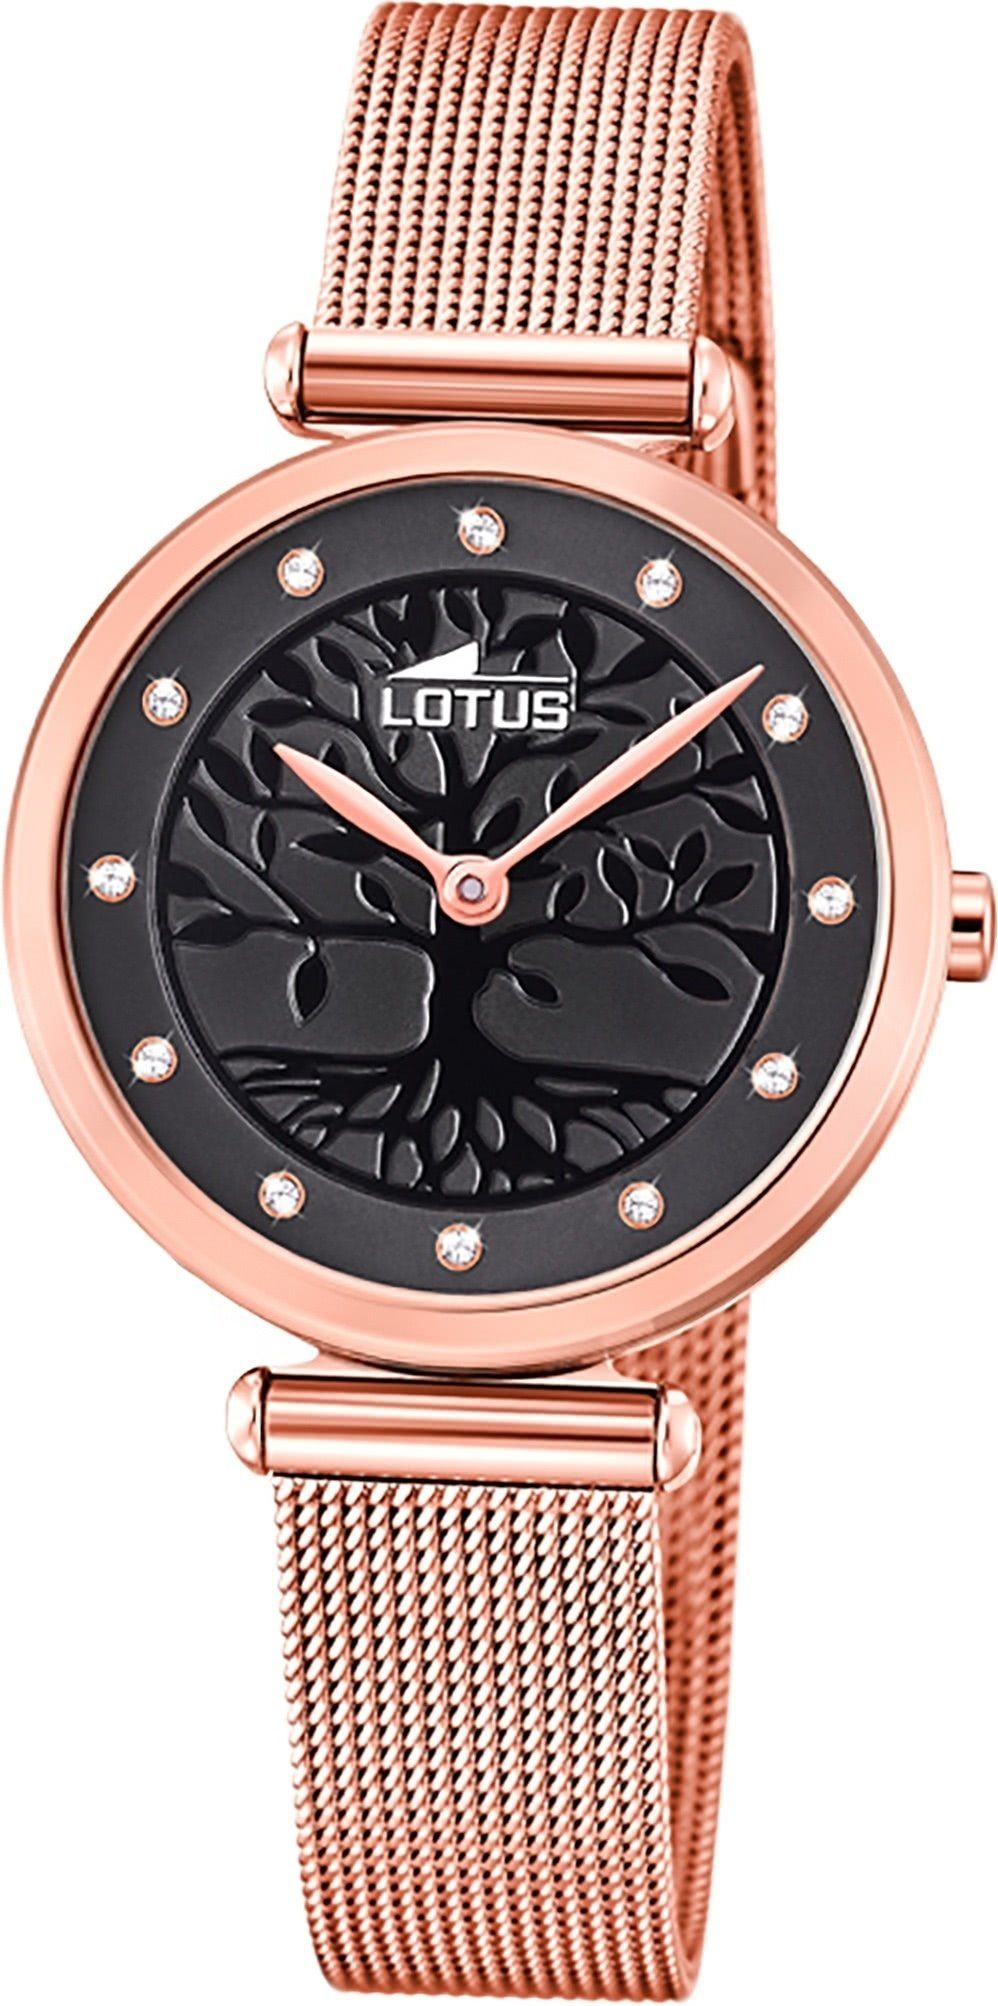 Damen Uhren Lotus Quarzuhr D2UL18710/3 LOTUS Edelstahl Damen Uhr 18710/3, Damenuhr mit Edelstahlarmband, rundes Gehäuse, klein (